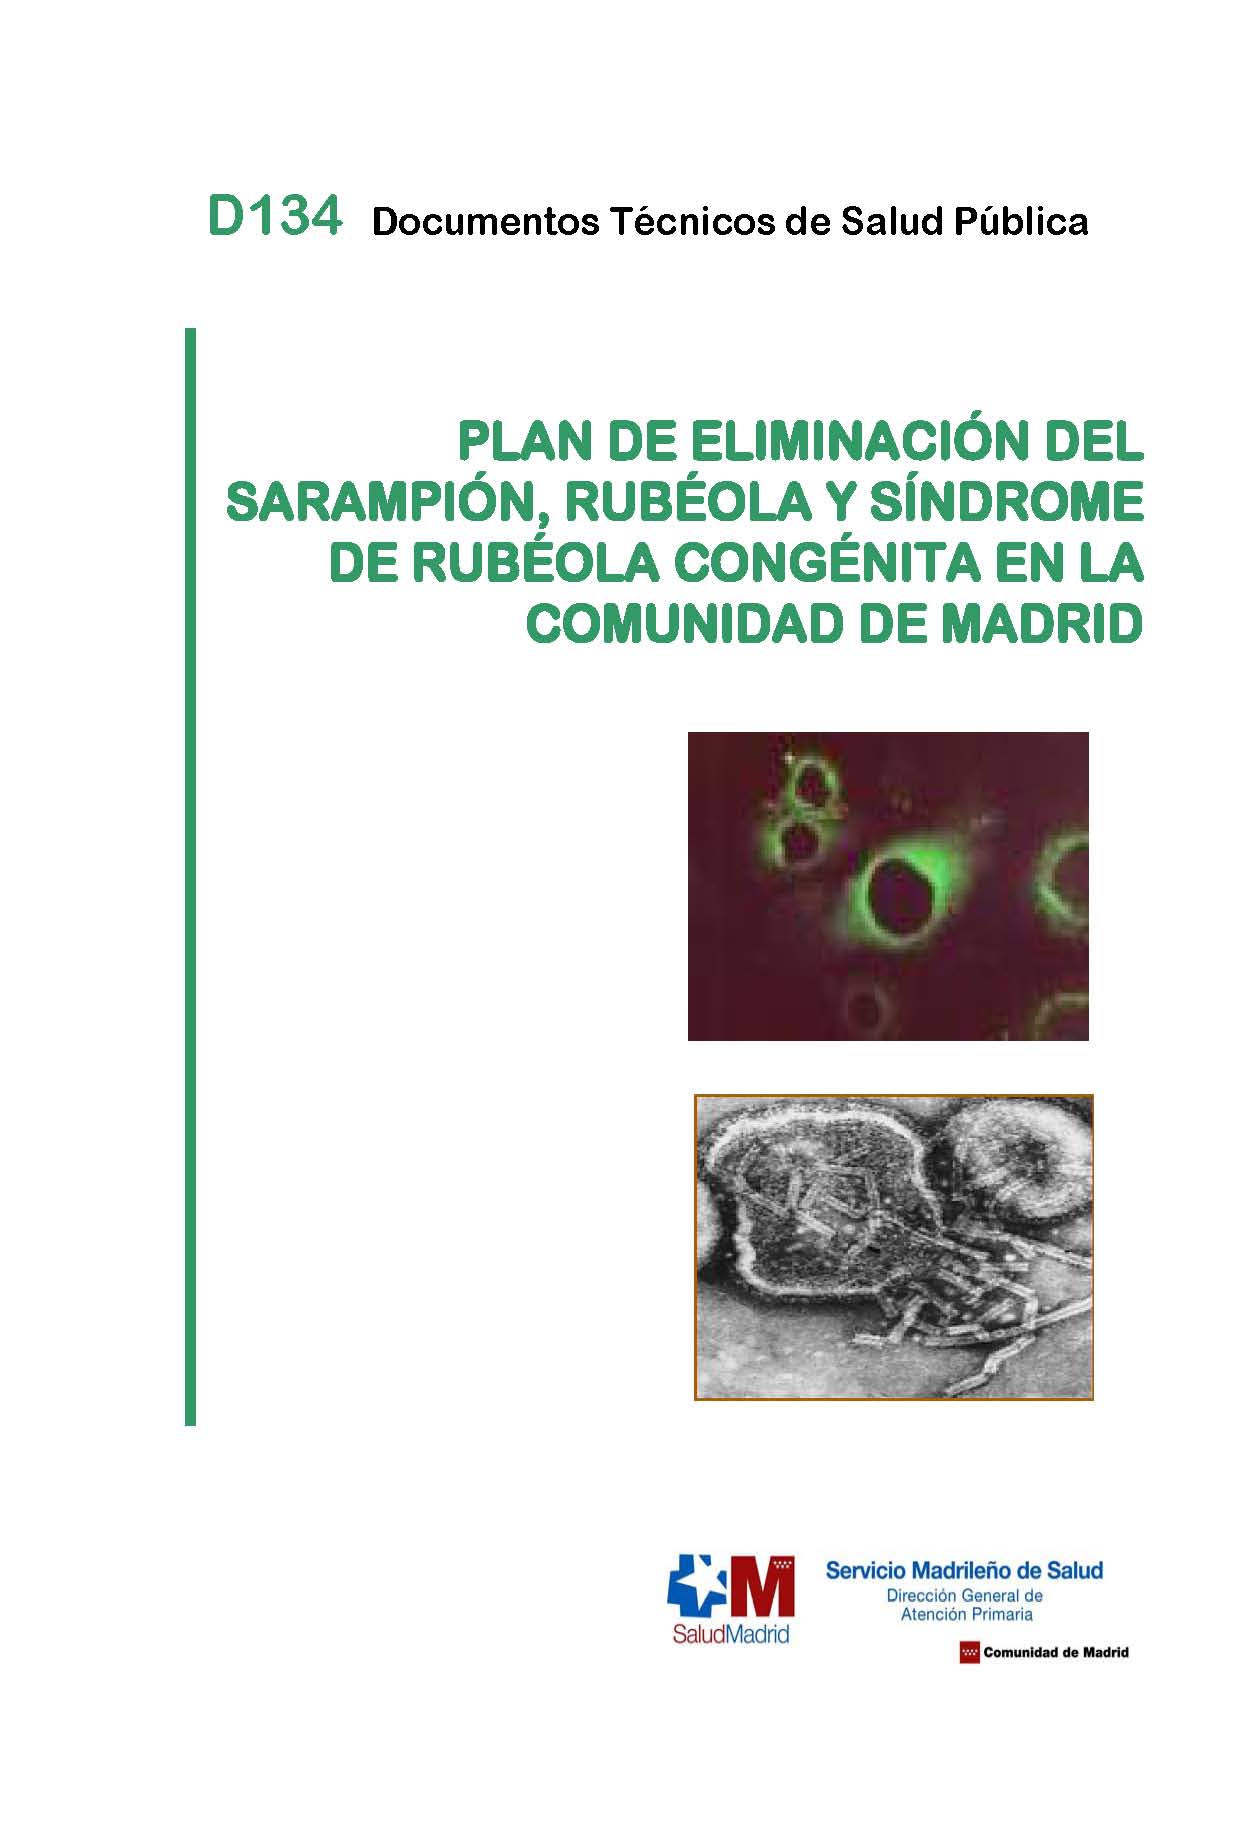 Portada de Plan de eliminación del sarampión, rubéola y síndrome de rubéola congénita en la Comunidad de Madrid